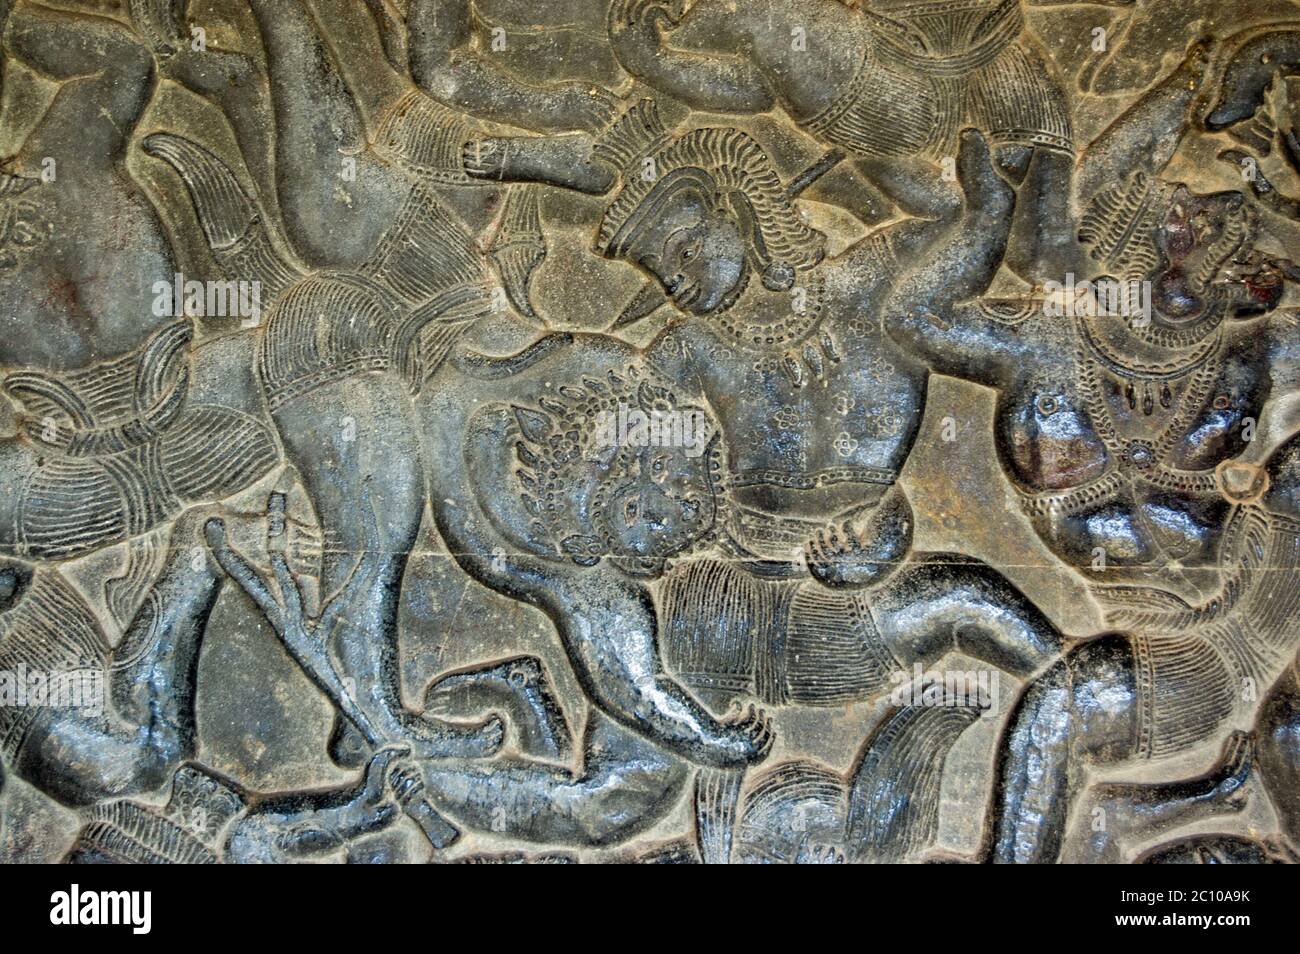 Antica scultura in bassorilievo Khmer che mostra un soldato di scimmia nell'esercito di Hanuman che muta un demone nella battaglia di Lanka, come raccontato nel Ramayana. Angk Foto Stock